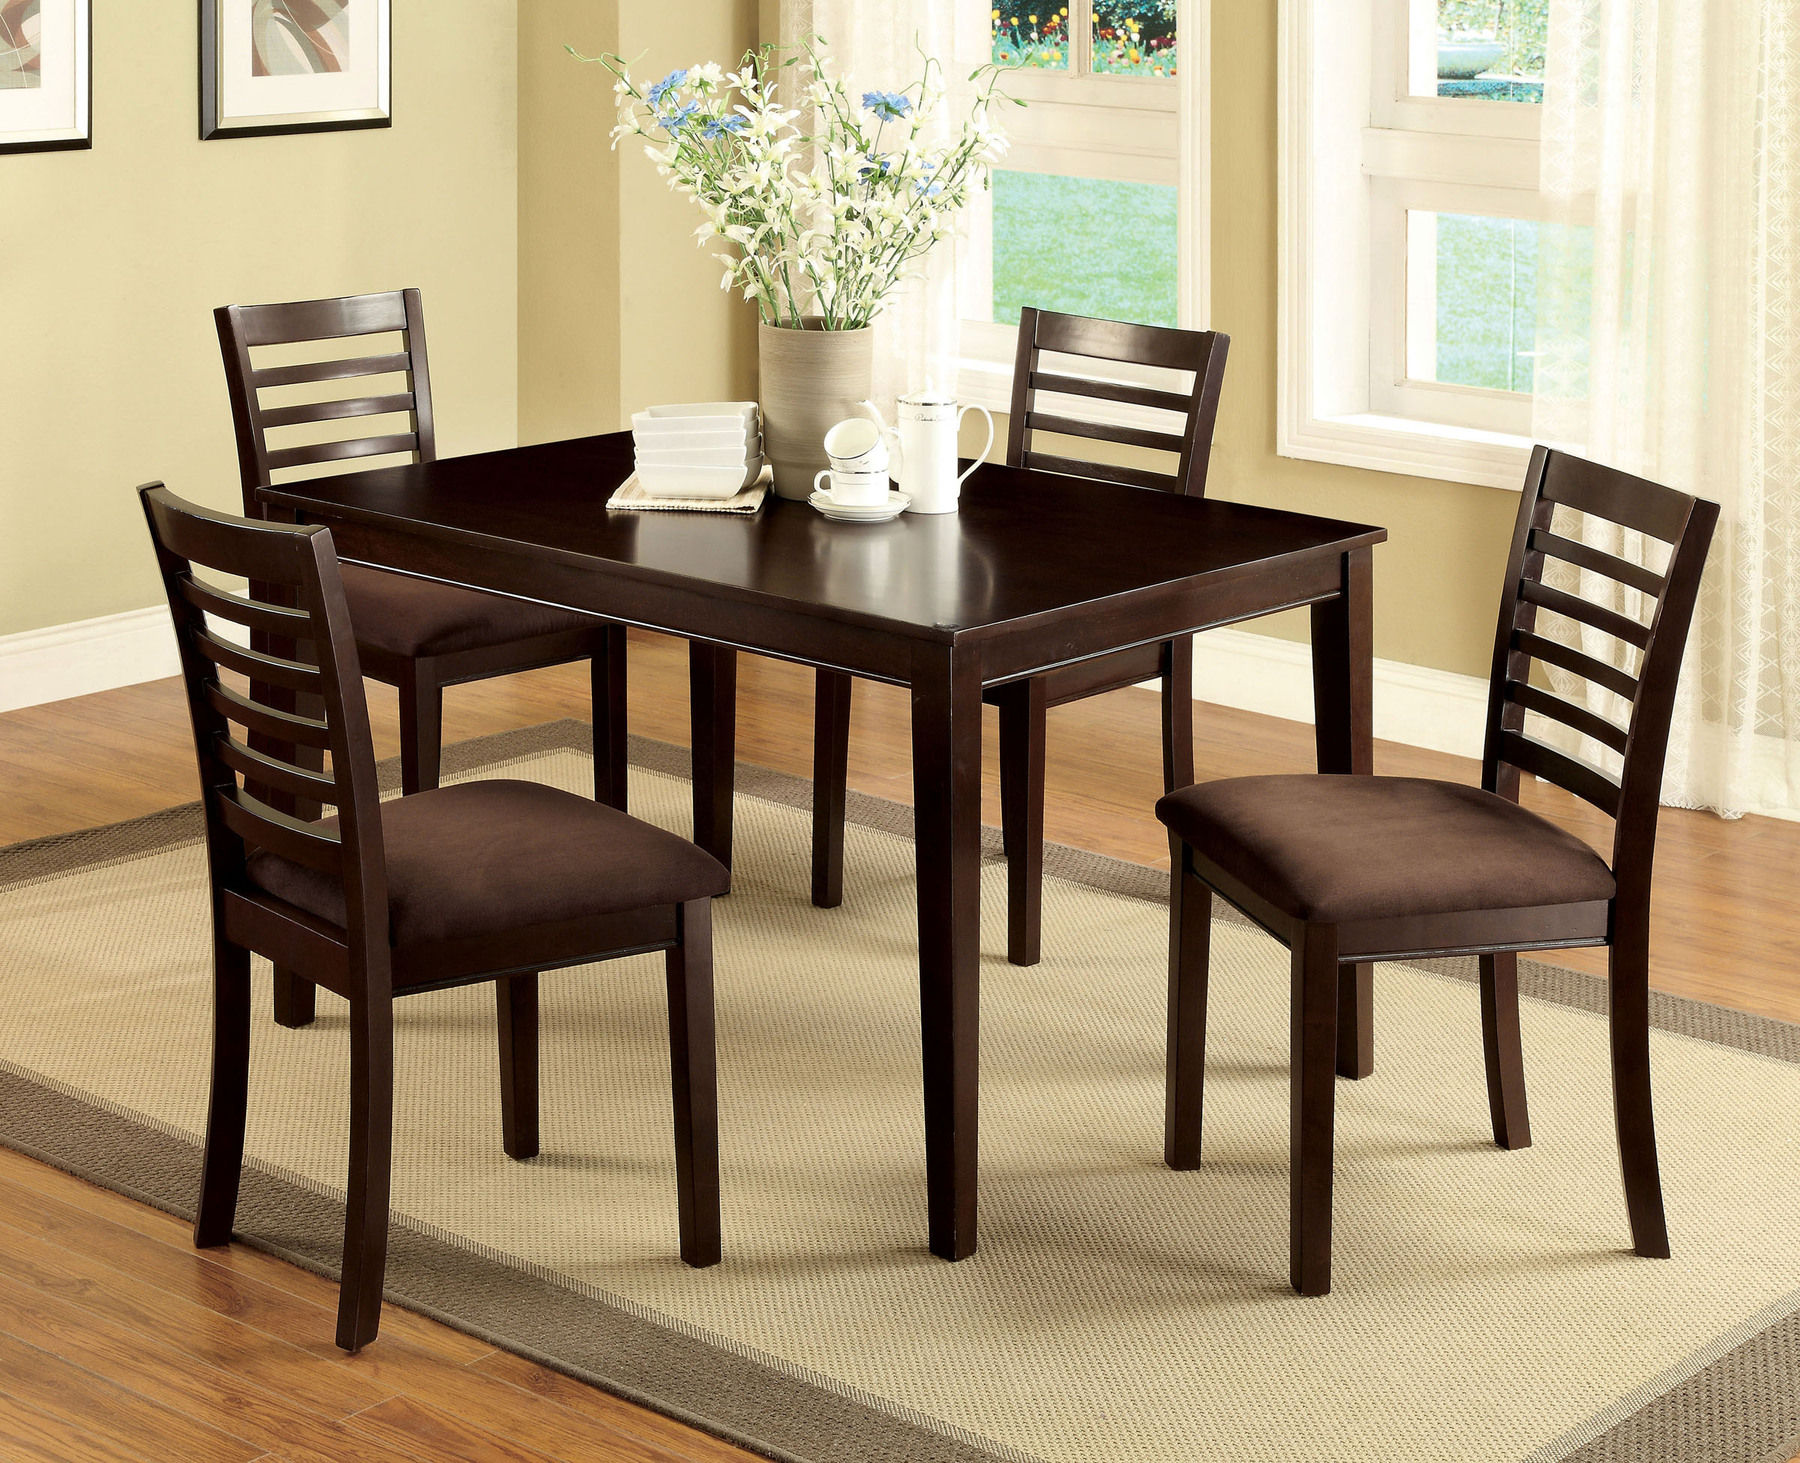 Стол кухонный коричневый. Стол со стульями на кухню компактный. Квадратный стол в интерьере кухни. Коричневая мебель в столовой. Стол коричневый.